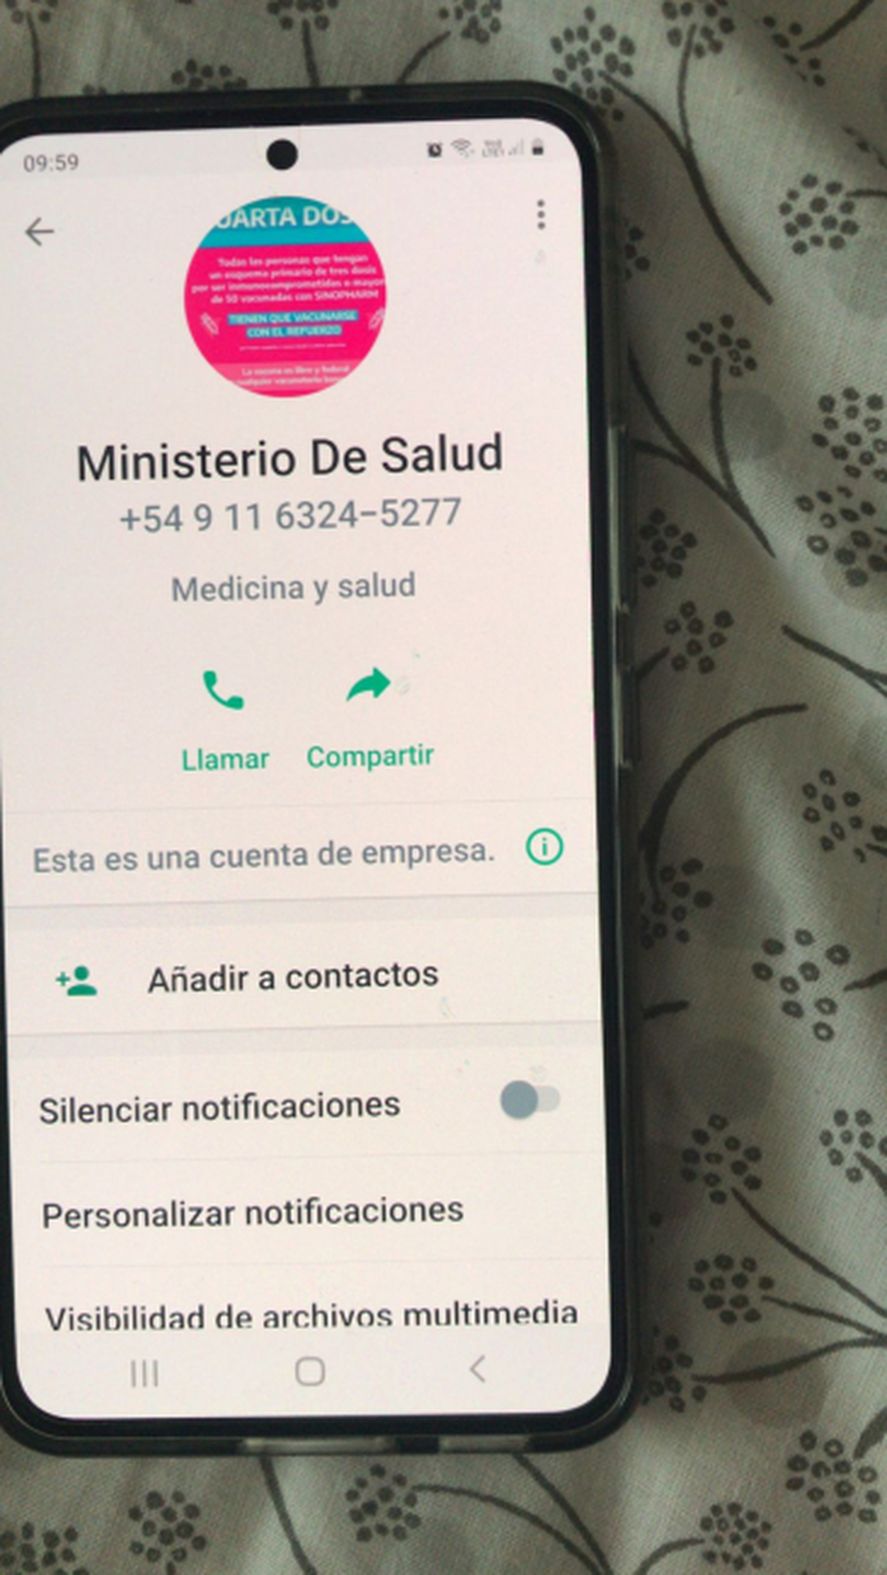 El Ministerio de Salud de la provincia de Buenos Aires alertaron sobre posibles estafas a través de llamados telefónicos falsos.